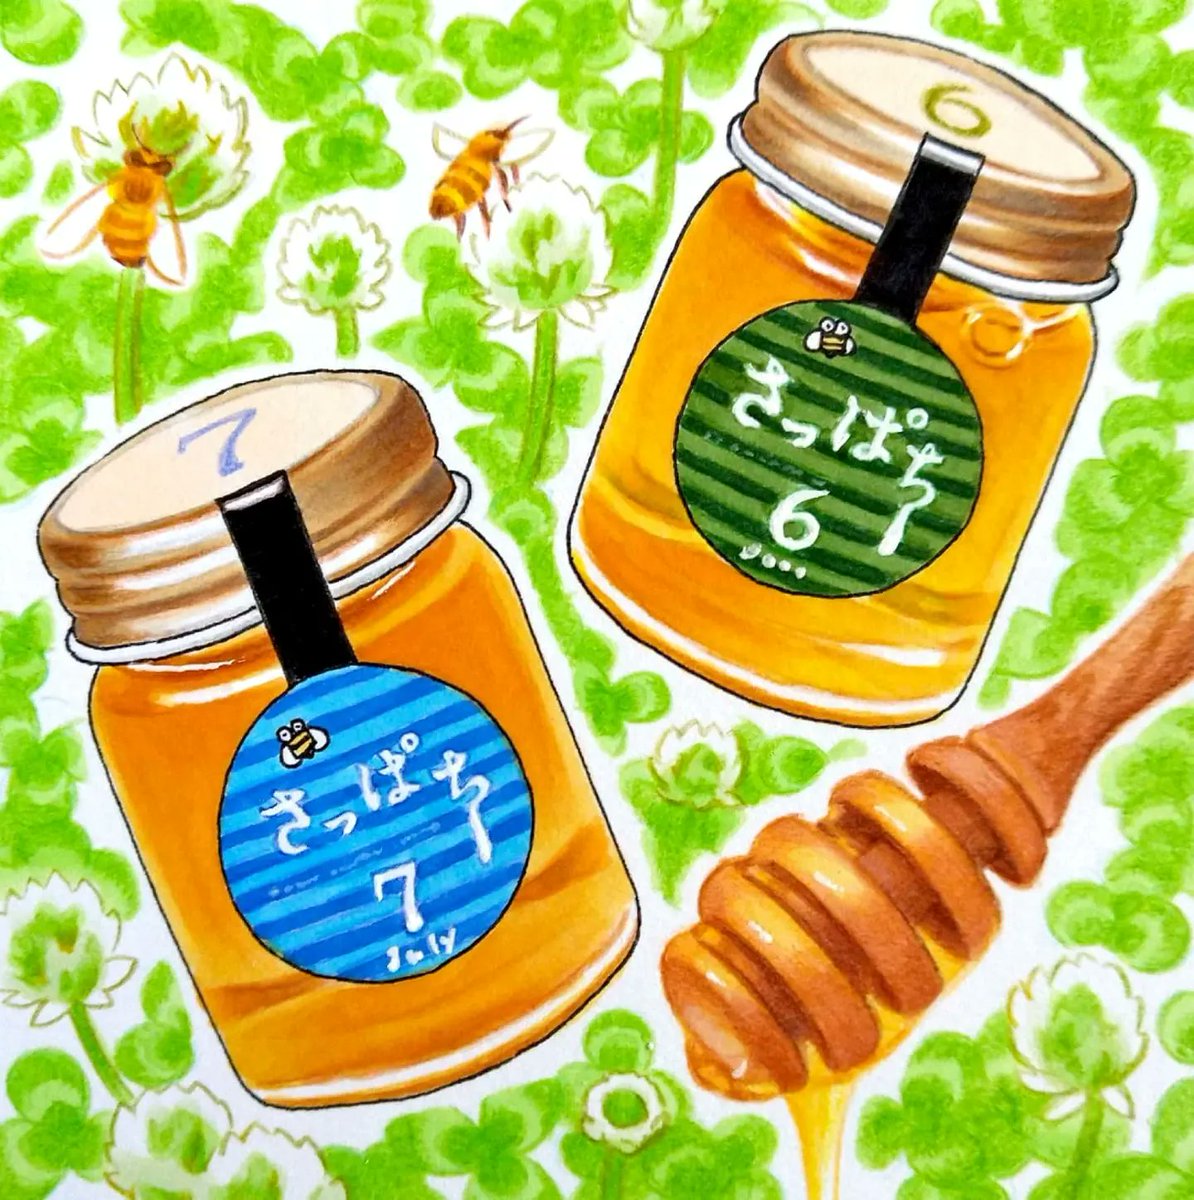 今日は #世界ミツバチの日 。サッポロ・ミツバチ・プロジェクトの「さっぱち蜂蜜」。札幌都心のビル屋上で飼育されるミツバチが集めた蜂蜜で、採蜜された月ごとの色や香りの違いが楽しめます🍯🐝 #田島ハルのくいしん簿 #北海道 #朝日新聞 #イラスト #食べ物イラスト